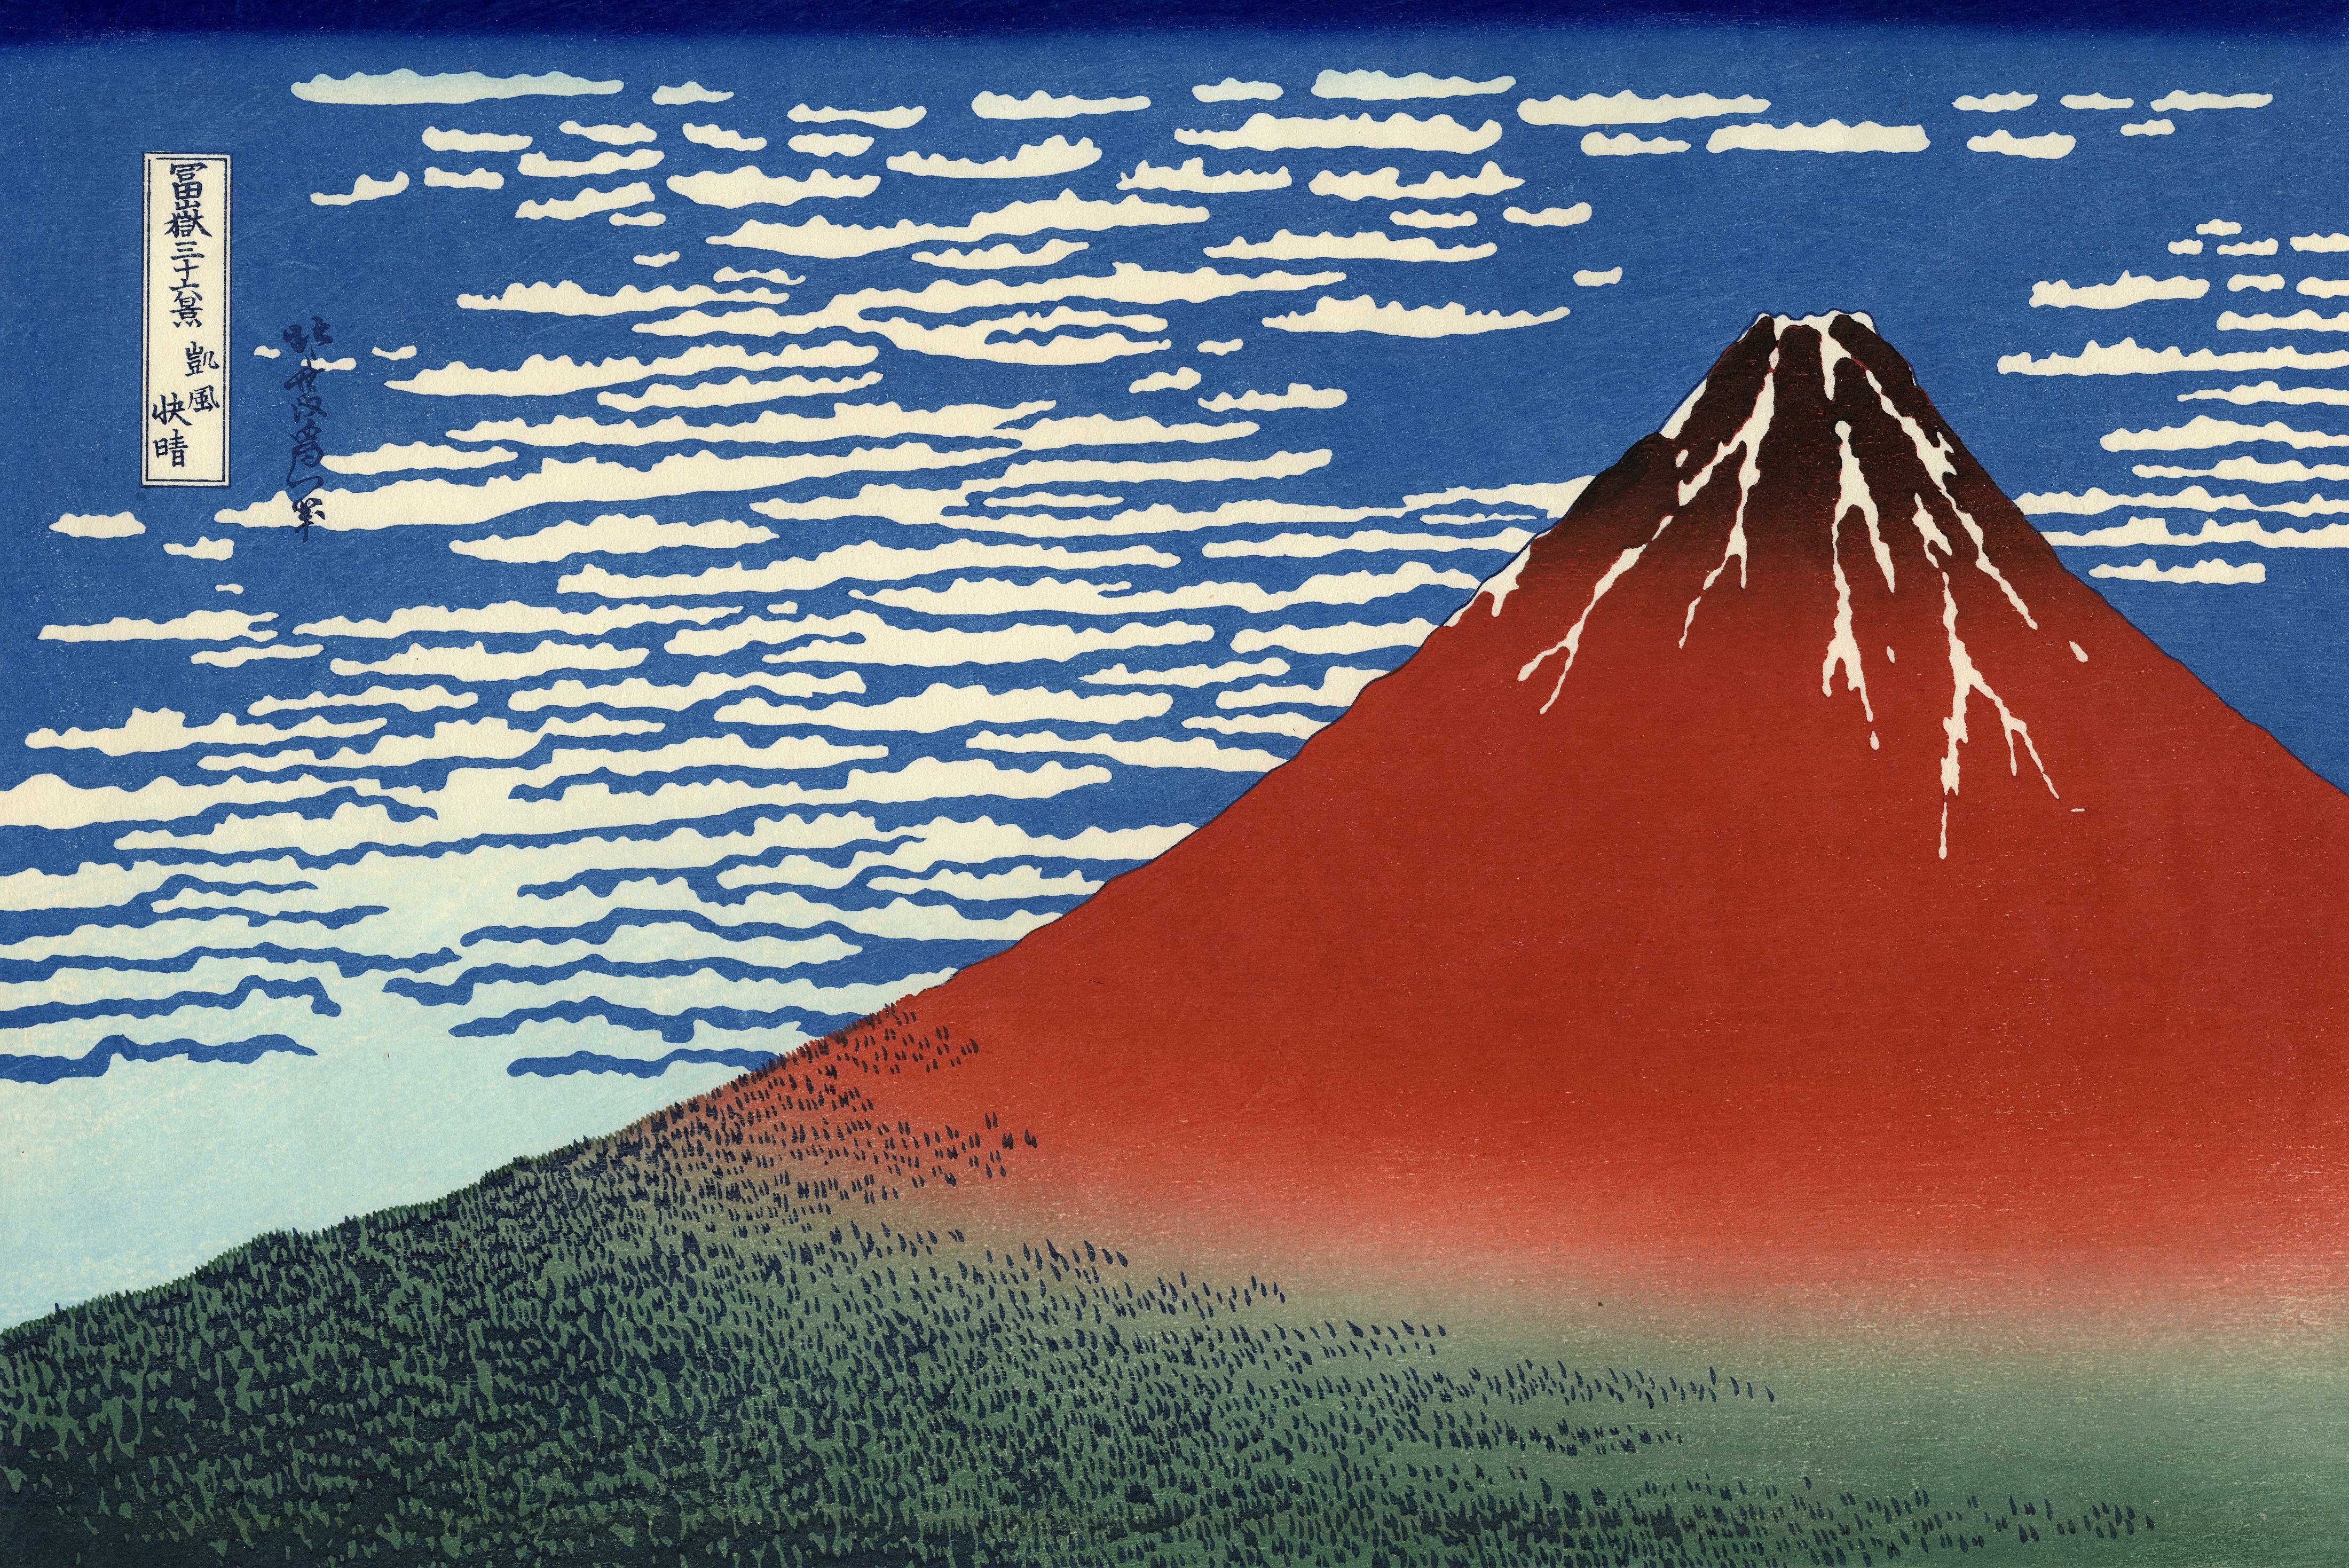 葛饰北斋大师富岳三十六景赏析,被誉为日本浮世绘版画最高杰作